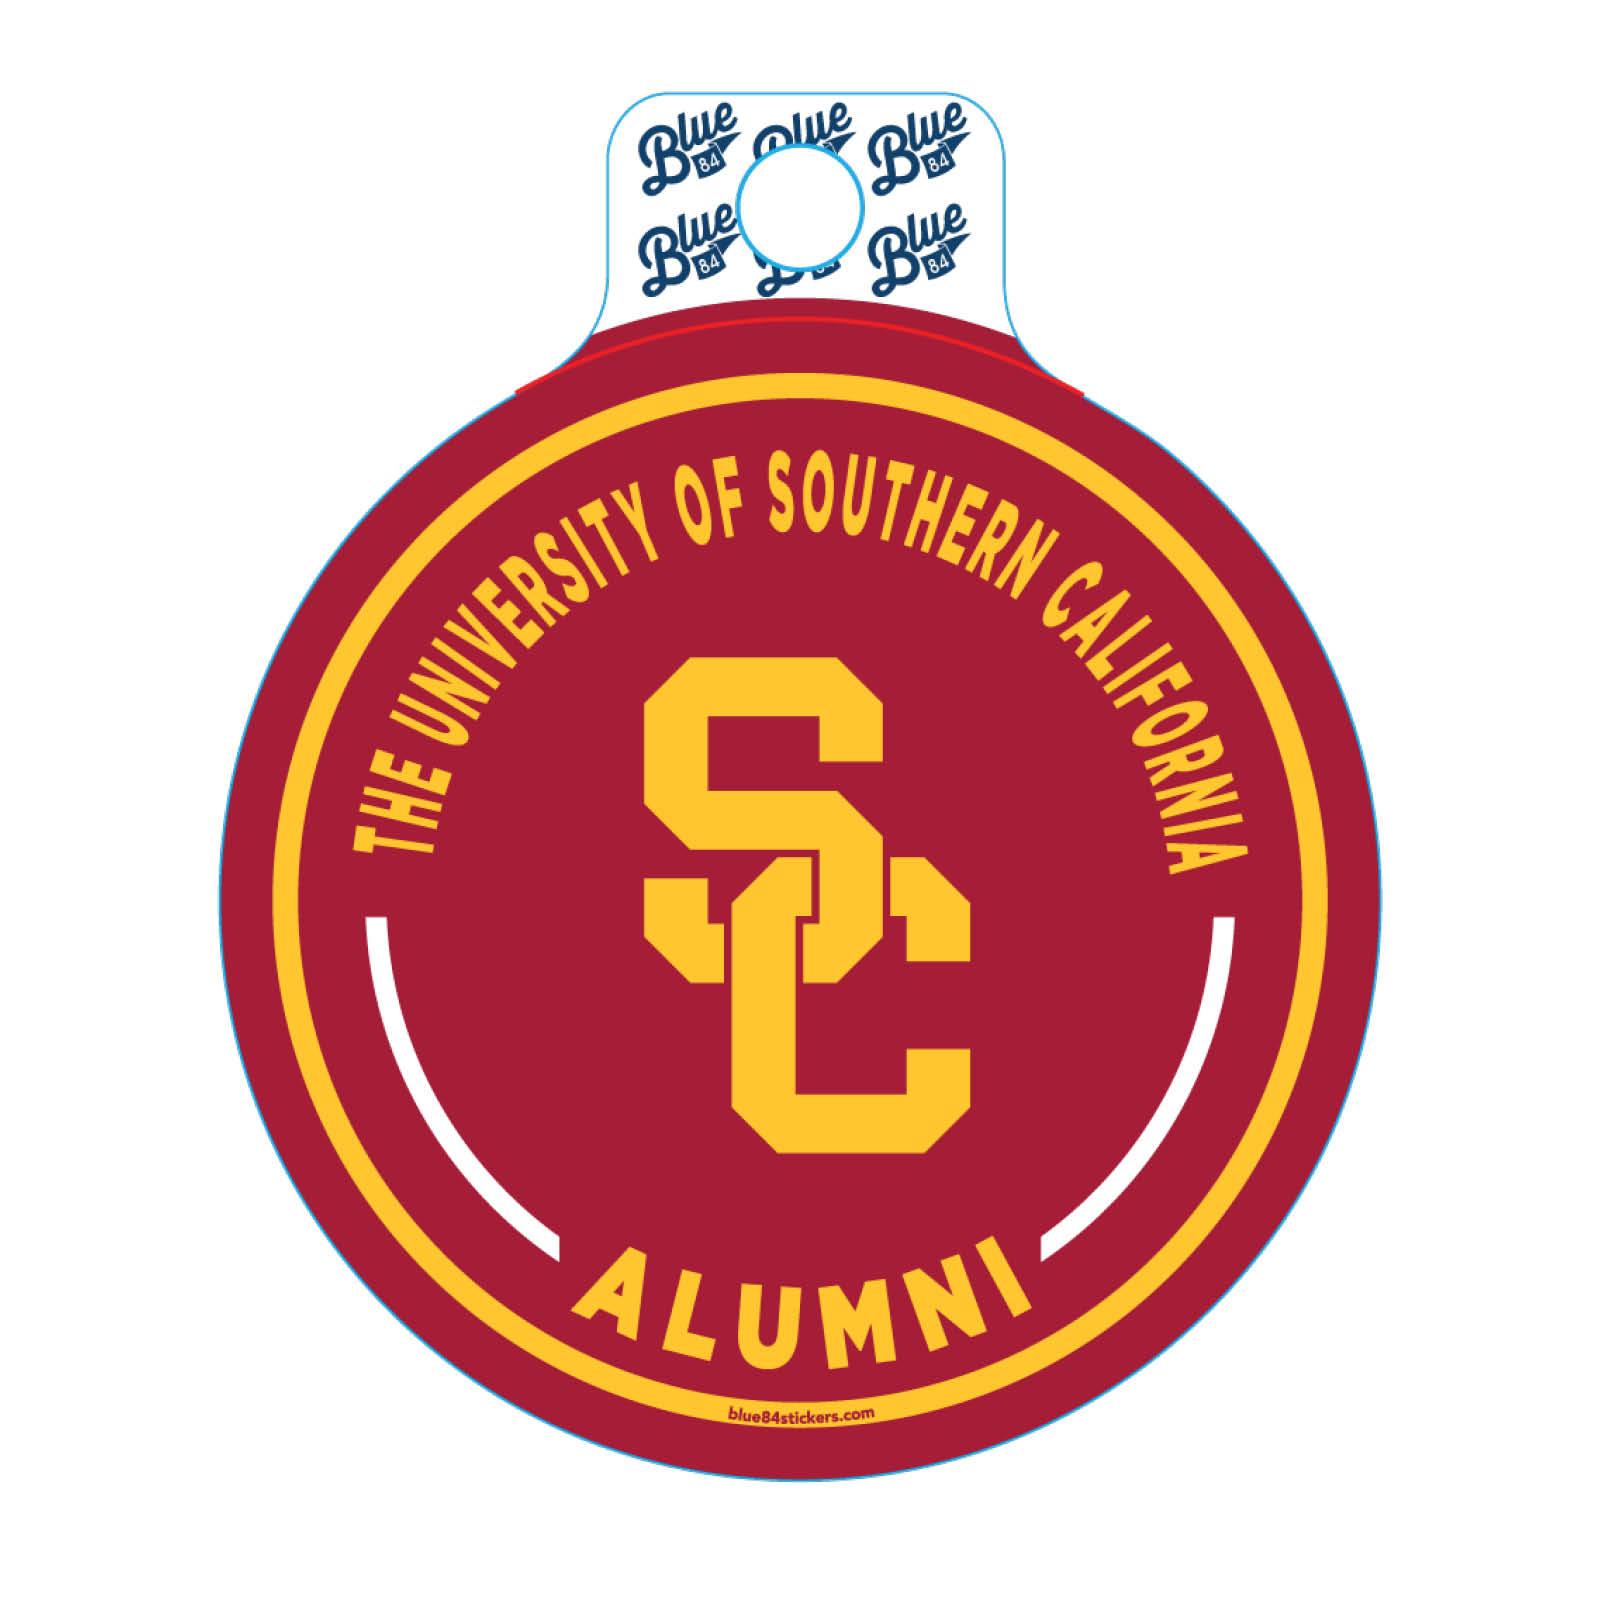 SC Interlock Courtesy Call Alumni Sticker by Blue 84 image01